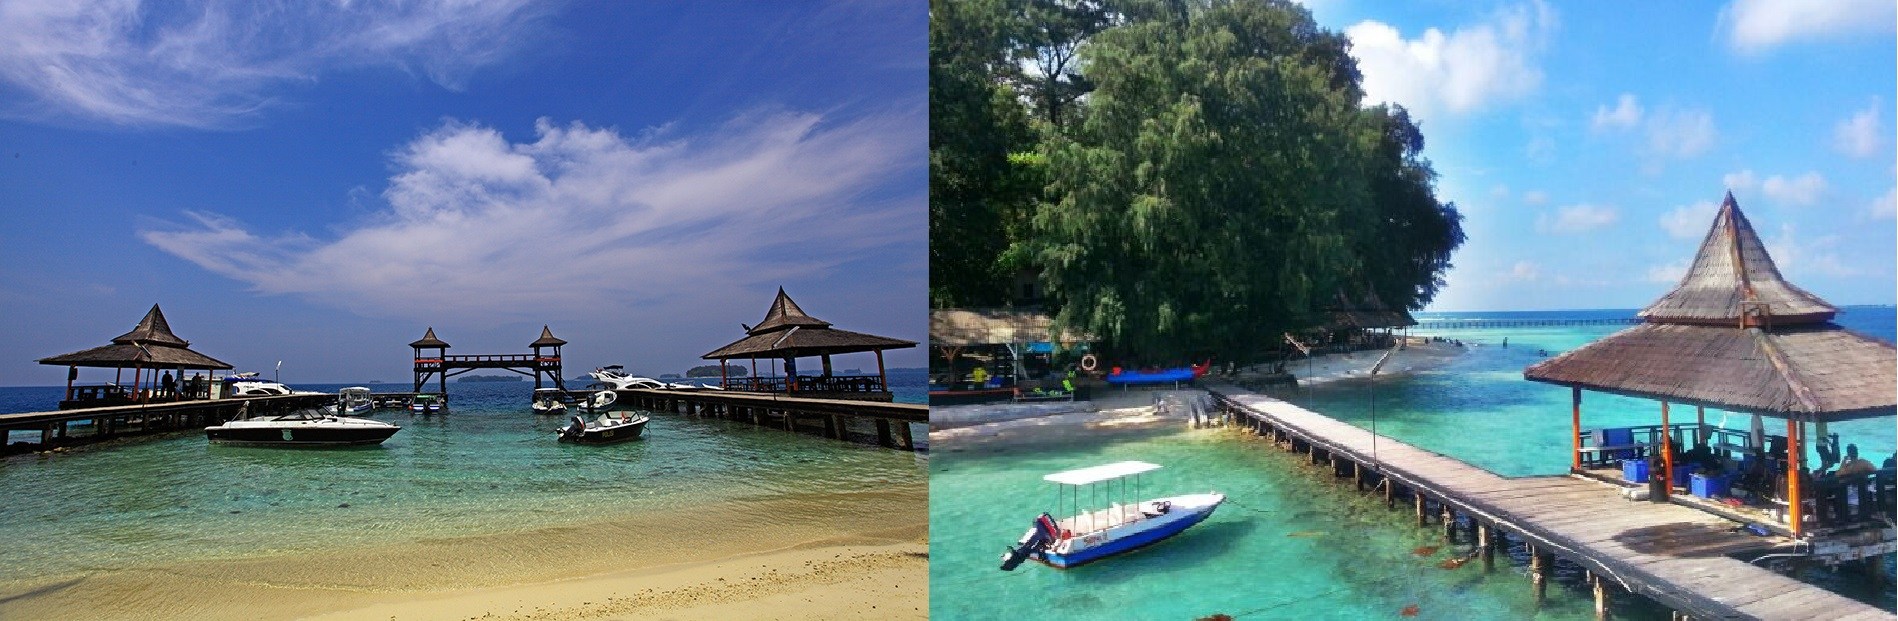 Paket liburan Pulau Seribu